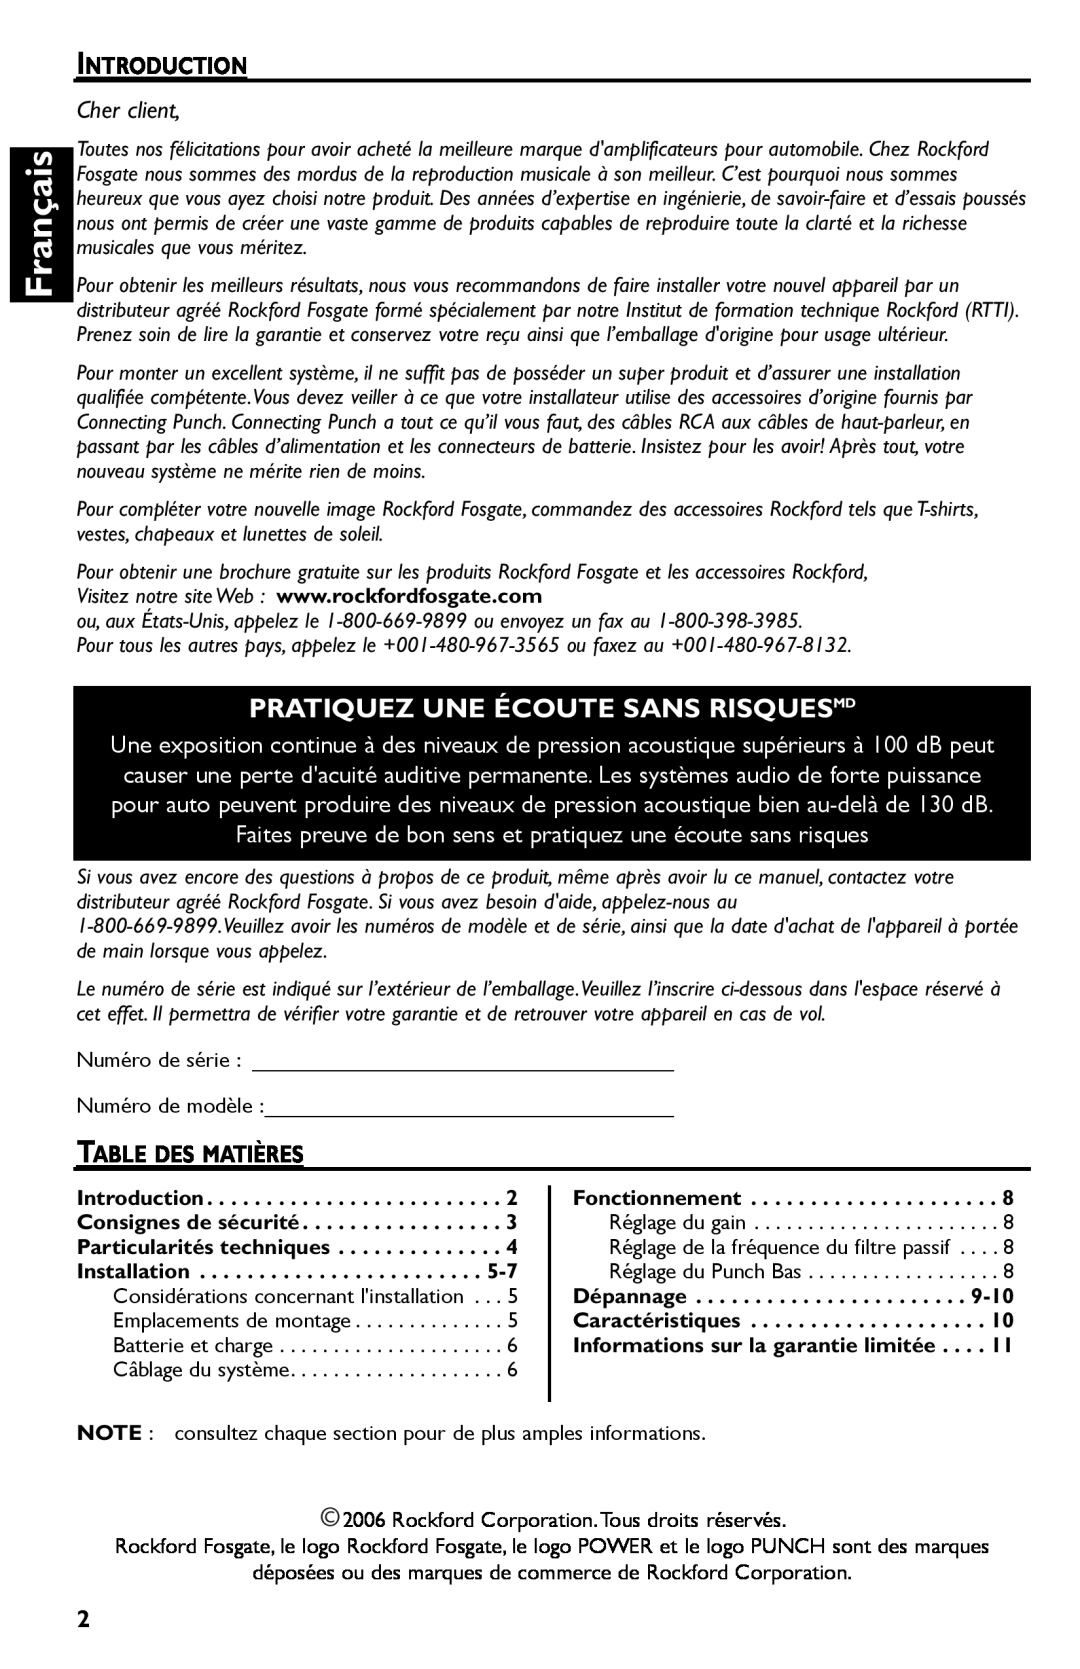 Rockford Fosgate R300-4 manual Français, Pratiquez Une Écoute Sans Risquesmd, Cher client 